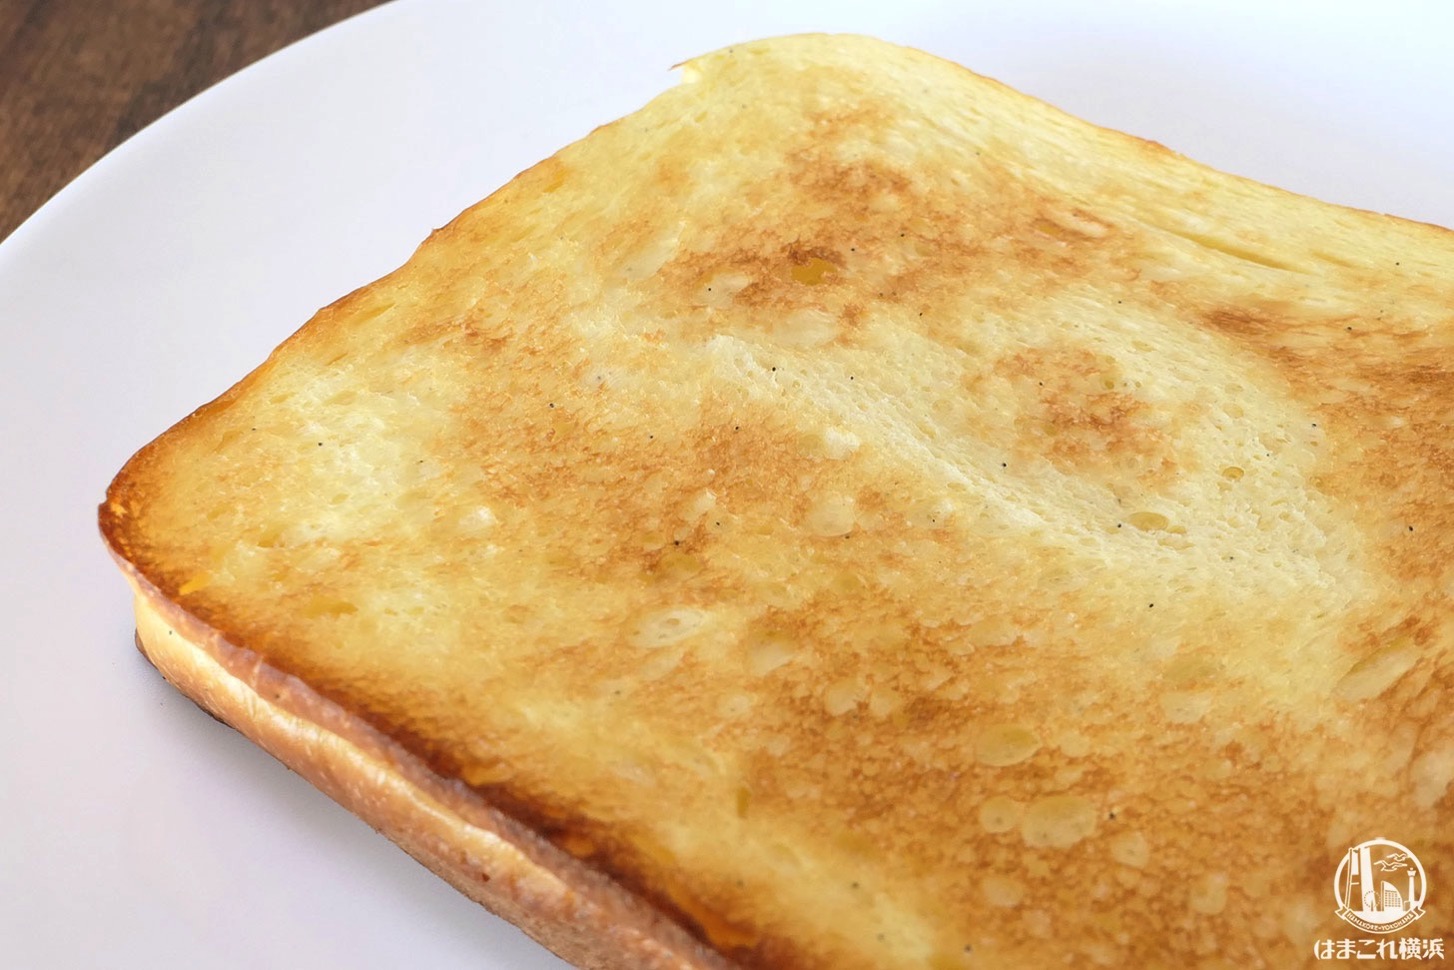 トースターで焼いた食パン「ふわ」